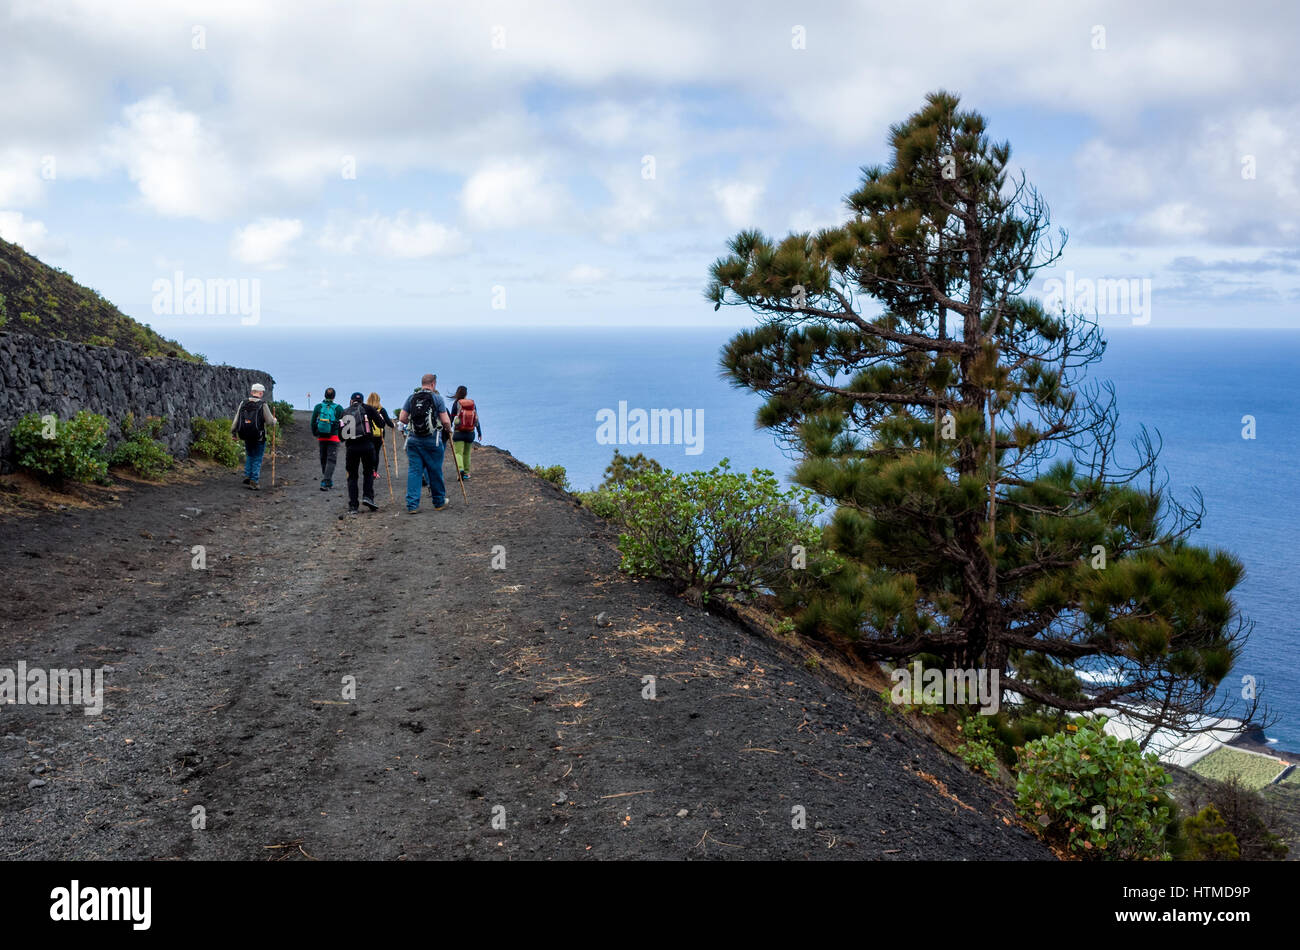 Sentier de randonnée, Fuencaliente. La Palma. Les randonneurs touristiques marchant le long d'une route volcanique sur leur randonnée guidée dans la région de Fuencaliente de La Palma. Un arbre de pin Canarien est capable de croître sur les côtés abrupts des montagnes ou le volcan ridge. Banque D'Images